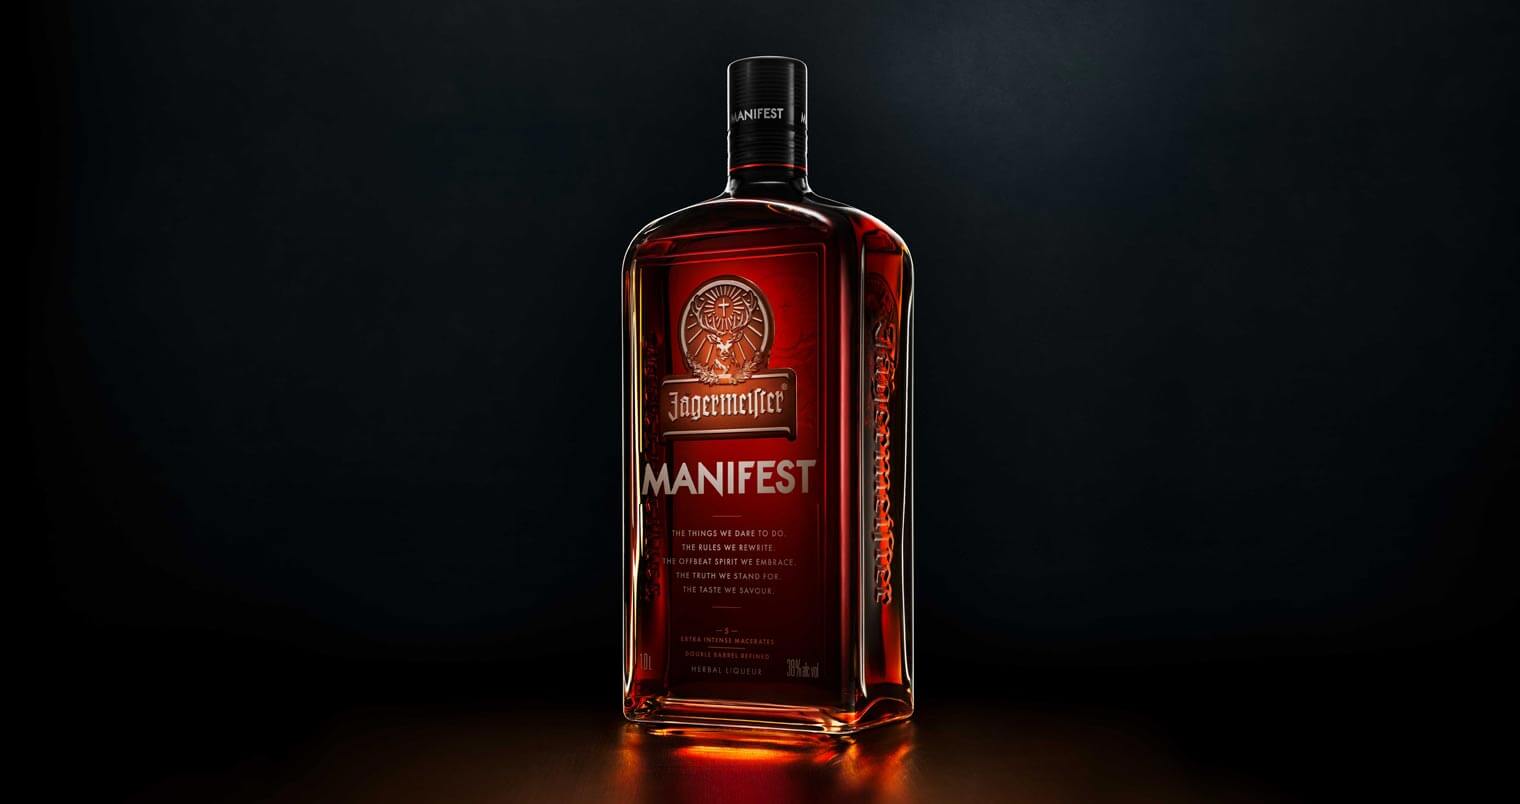 Jägermeister Manifest, dark background, bottle with reflection